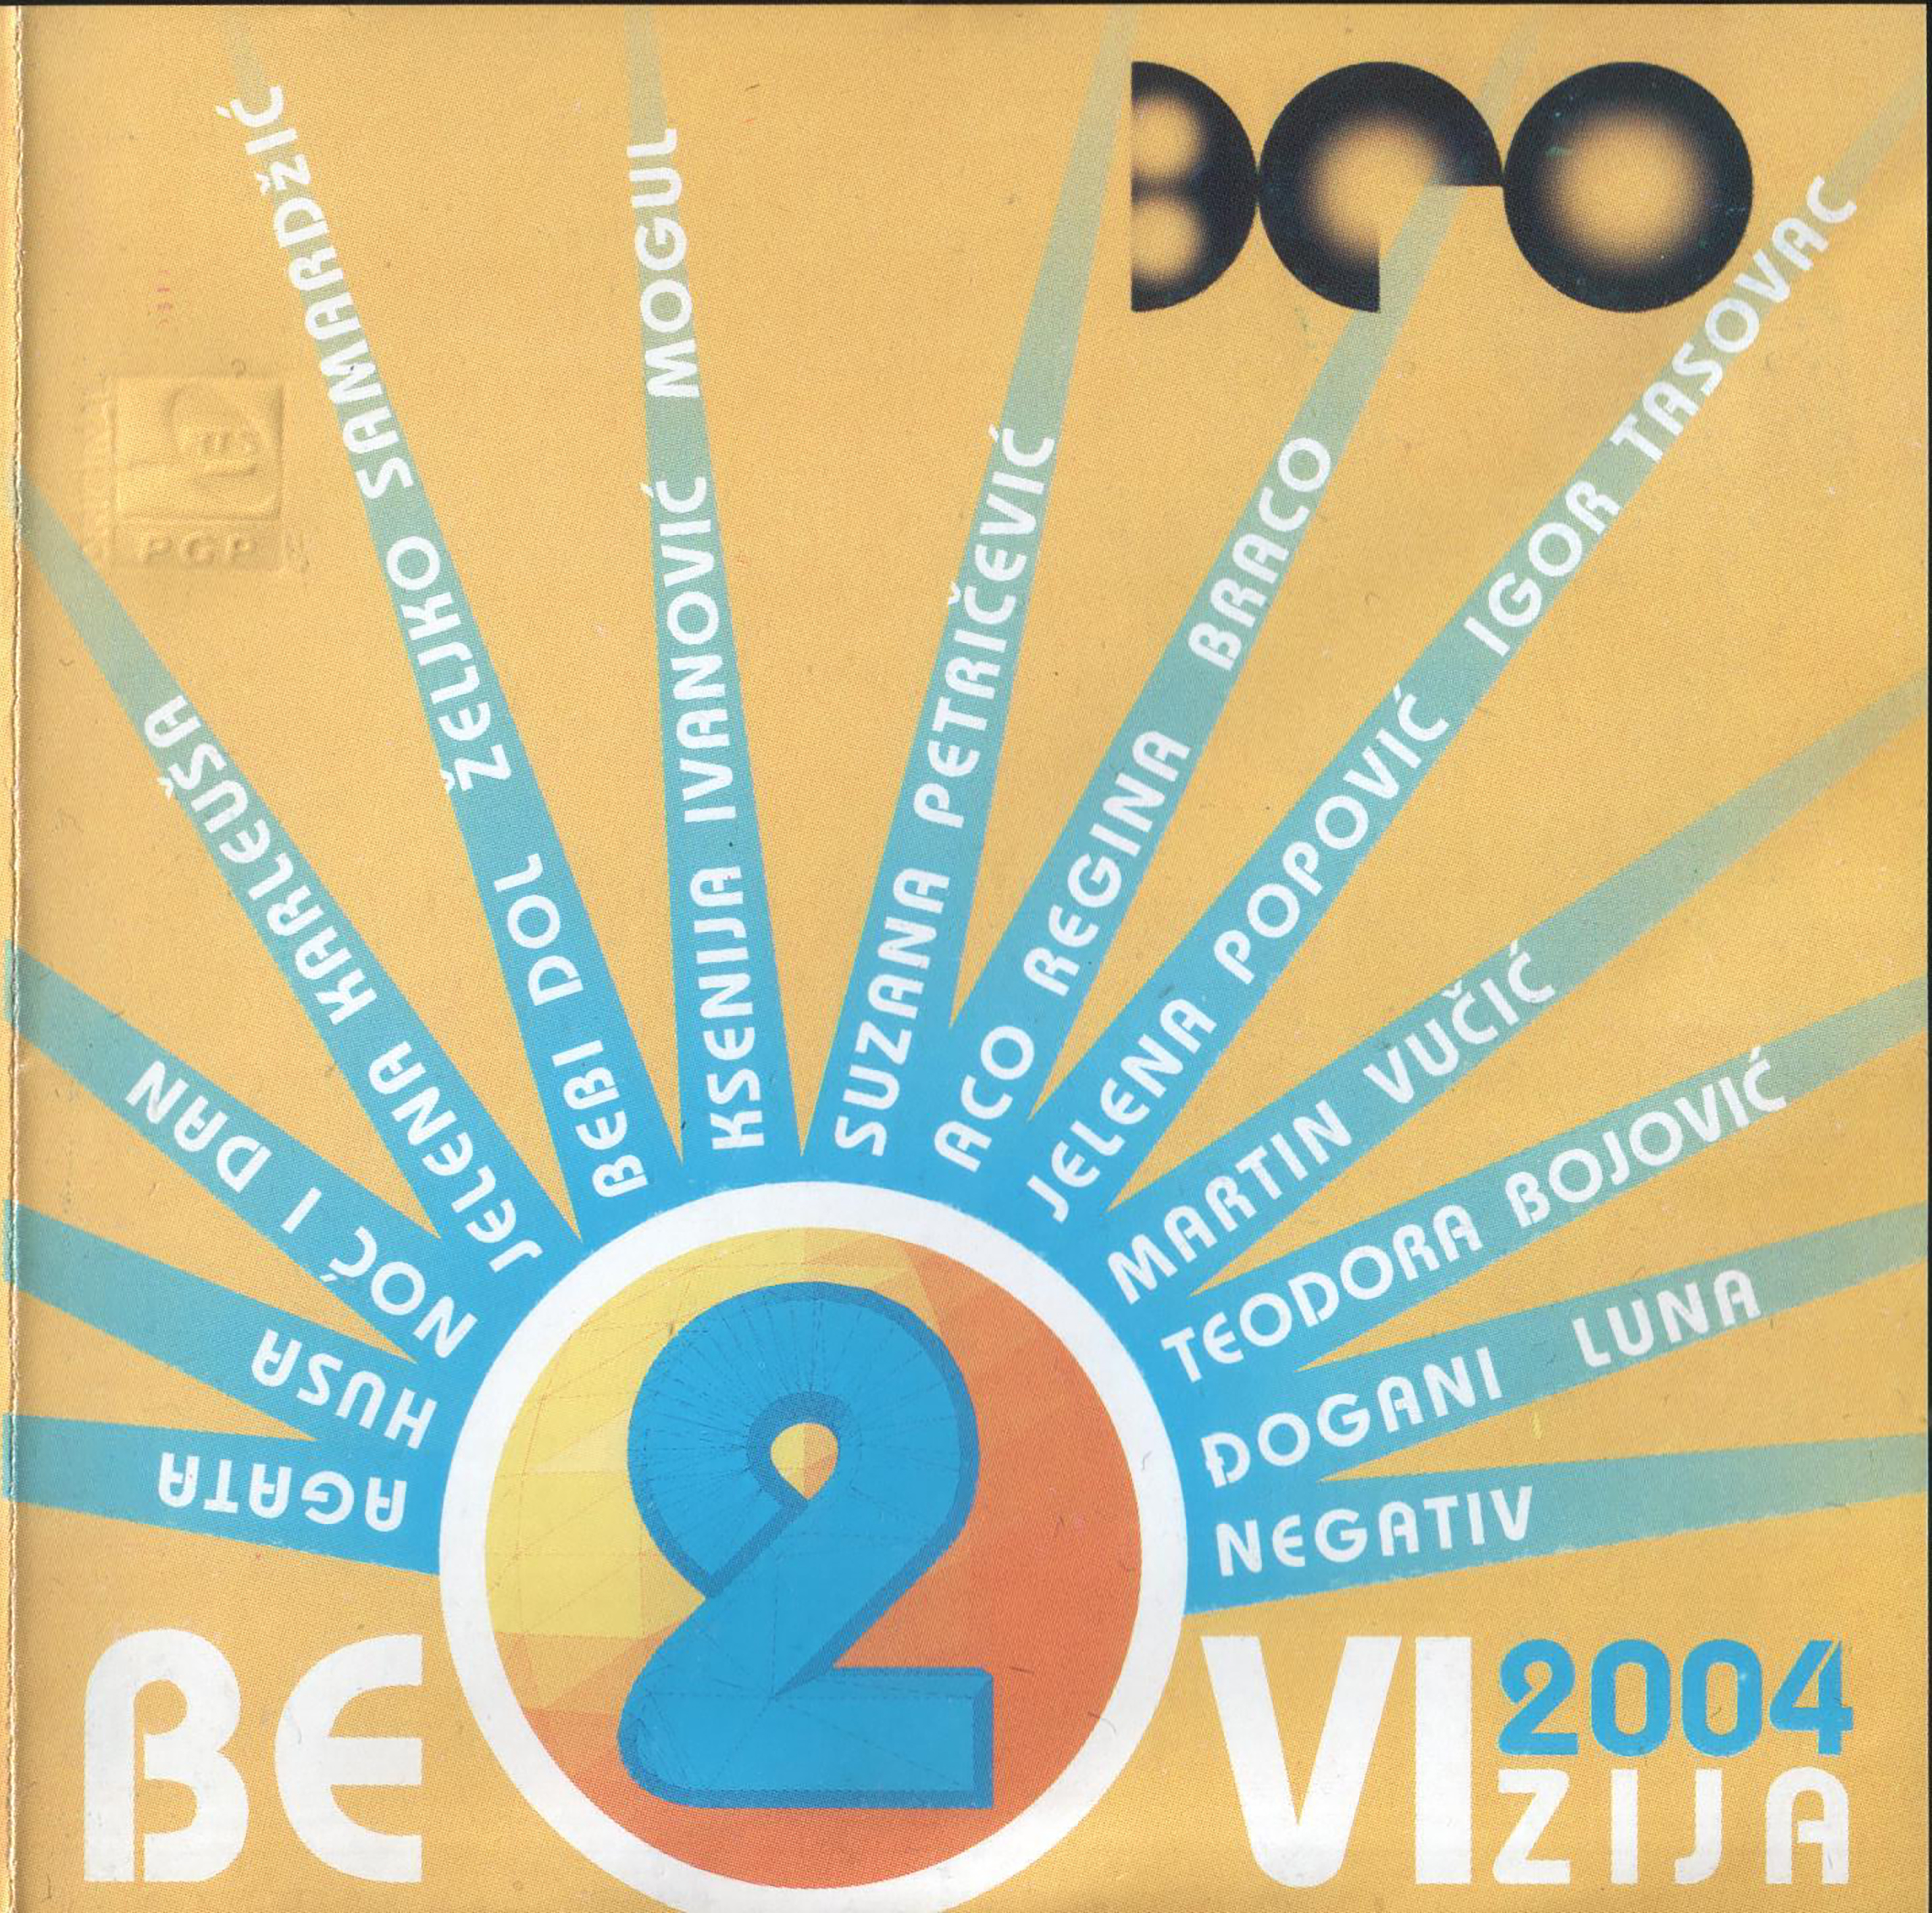 Beovizija 2004 CD 2 1 a